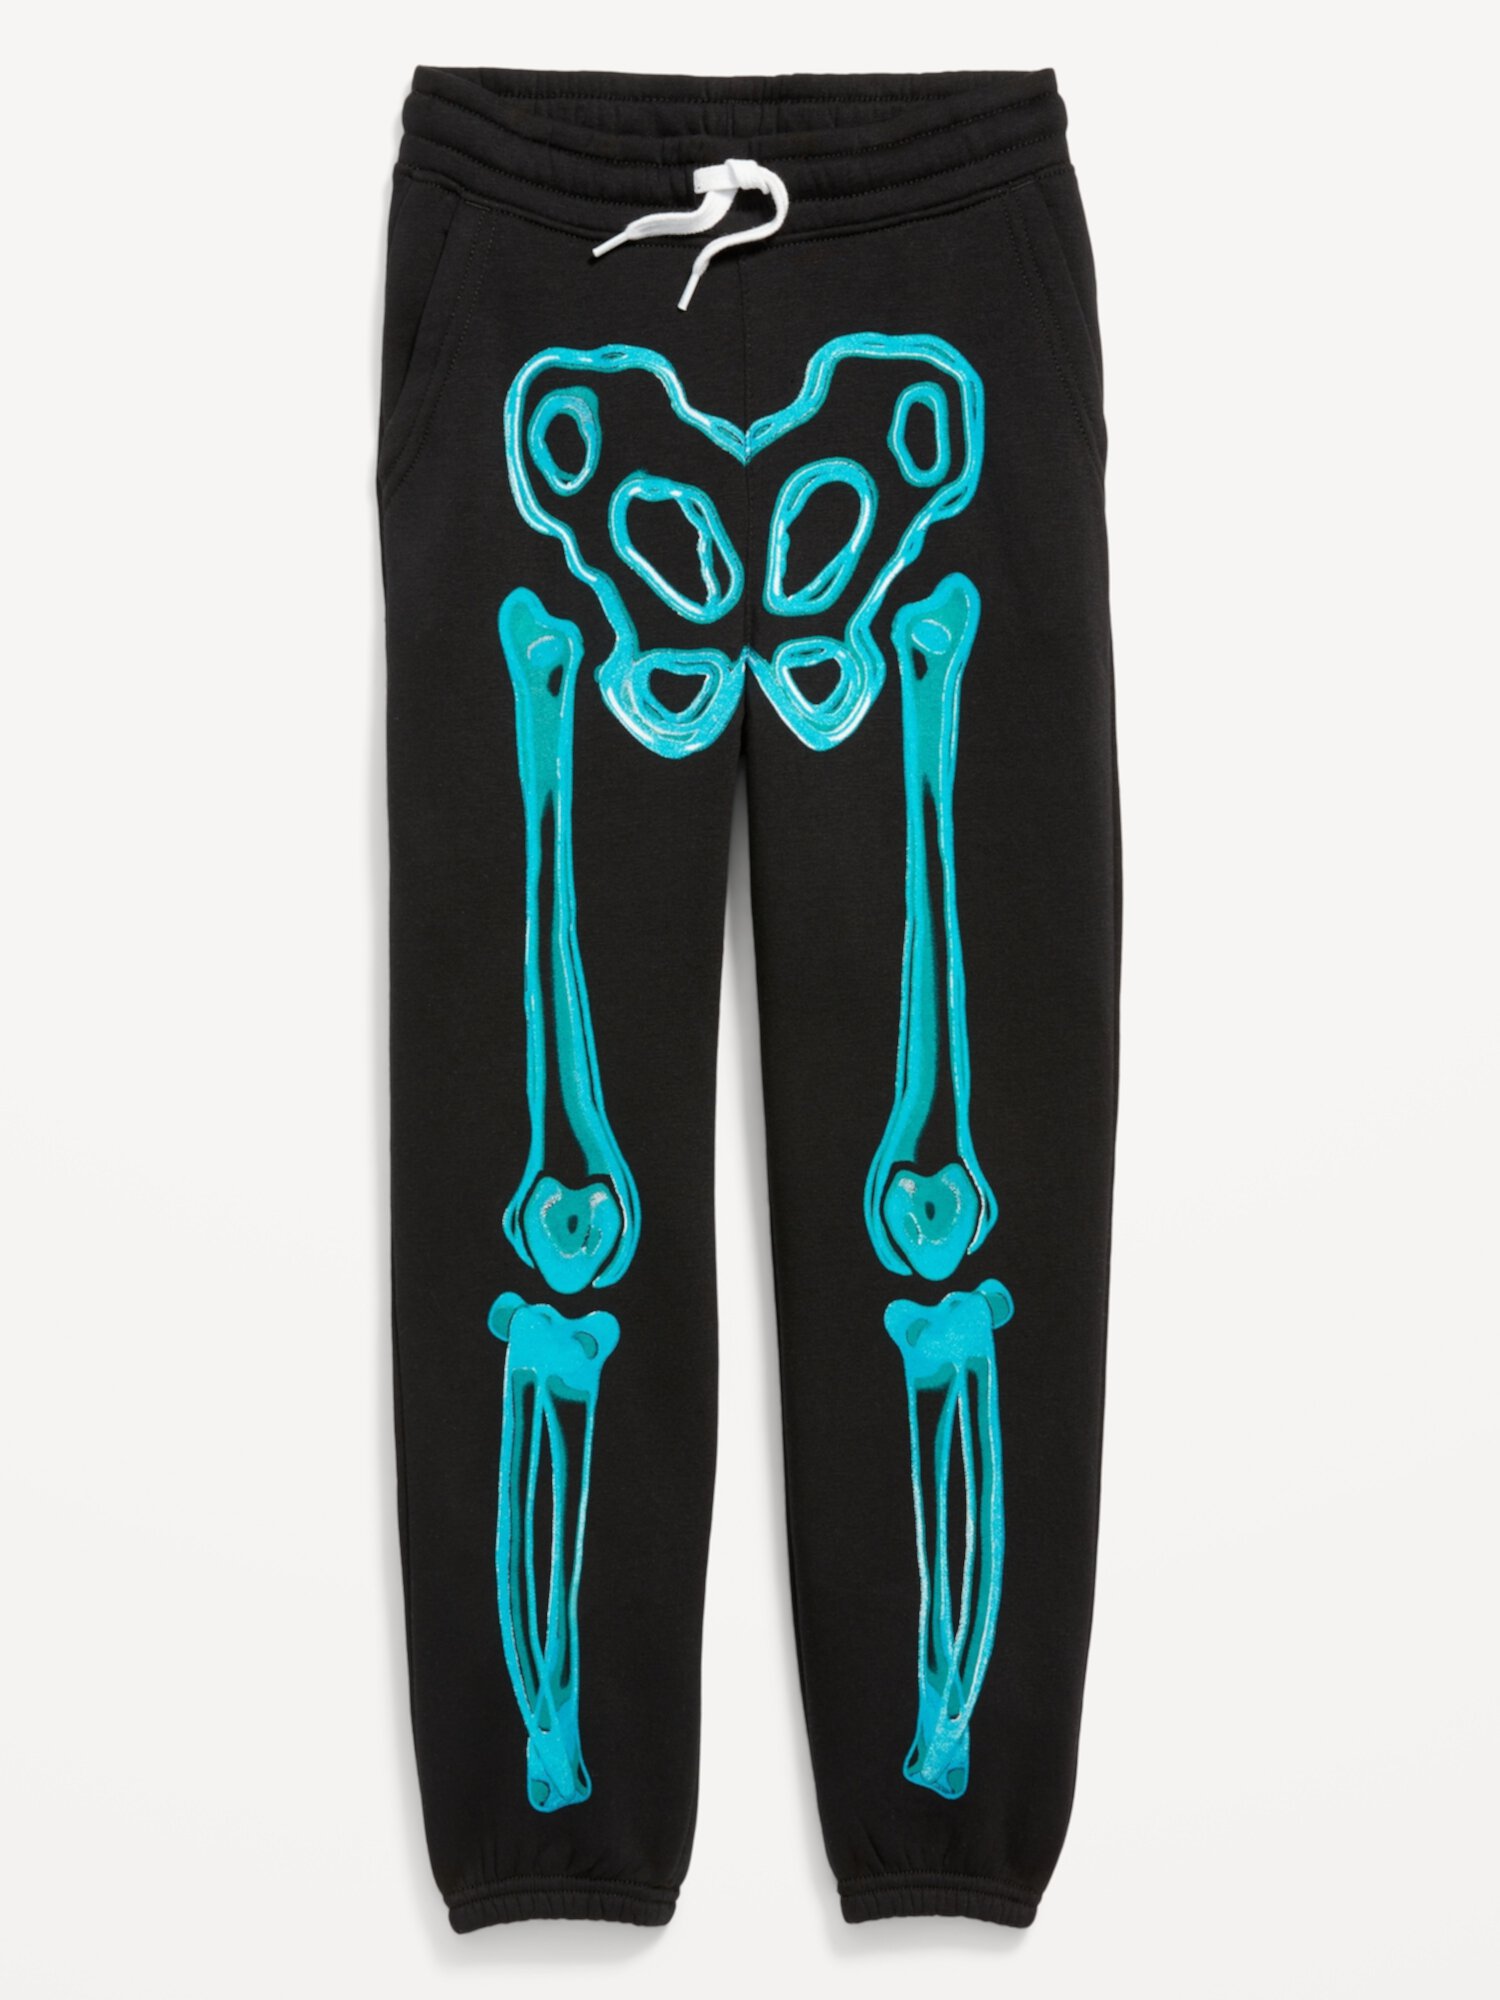 Детские спортивные штаны для бега с изображением скелета на Хэллоуин, нейтральные с гендерной точки зрения Old Navy